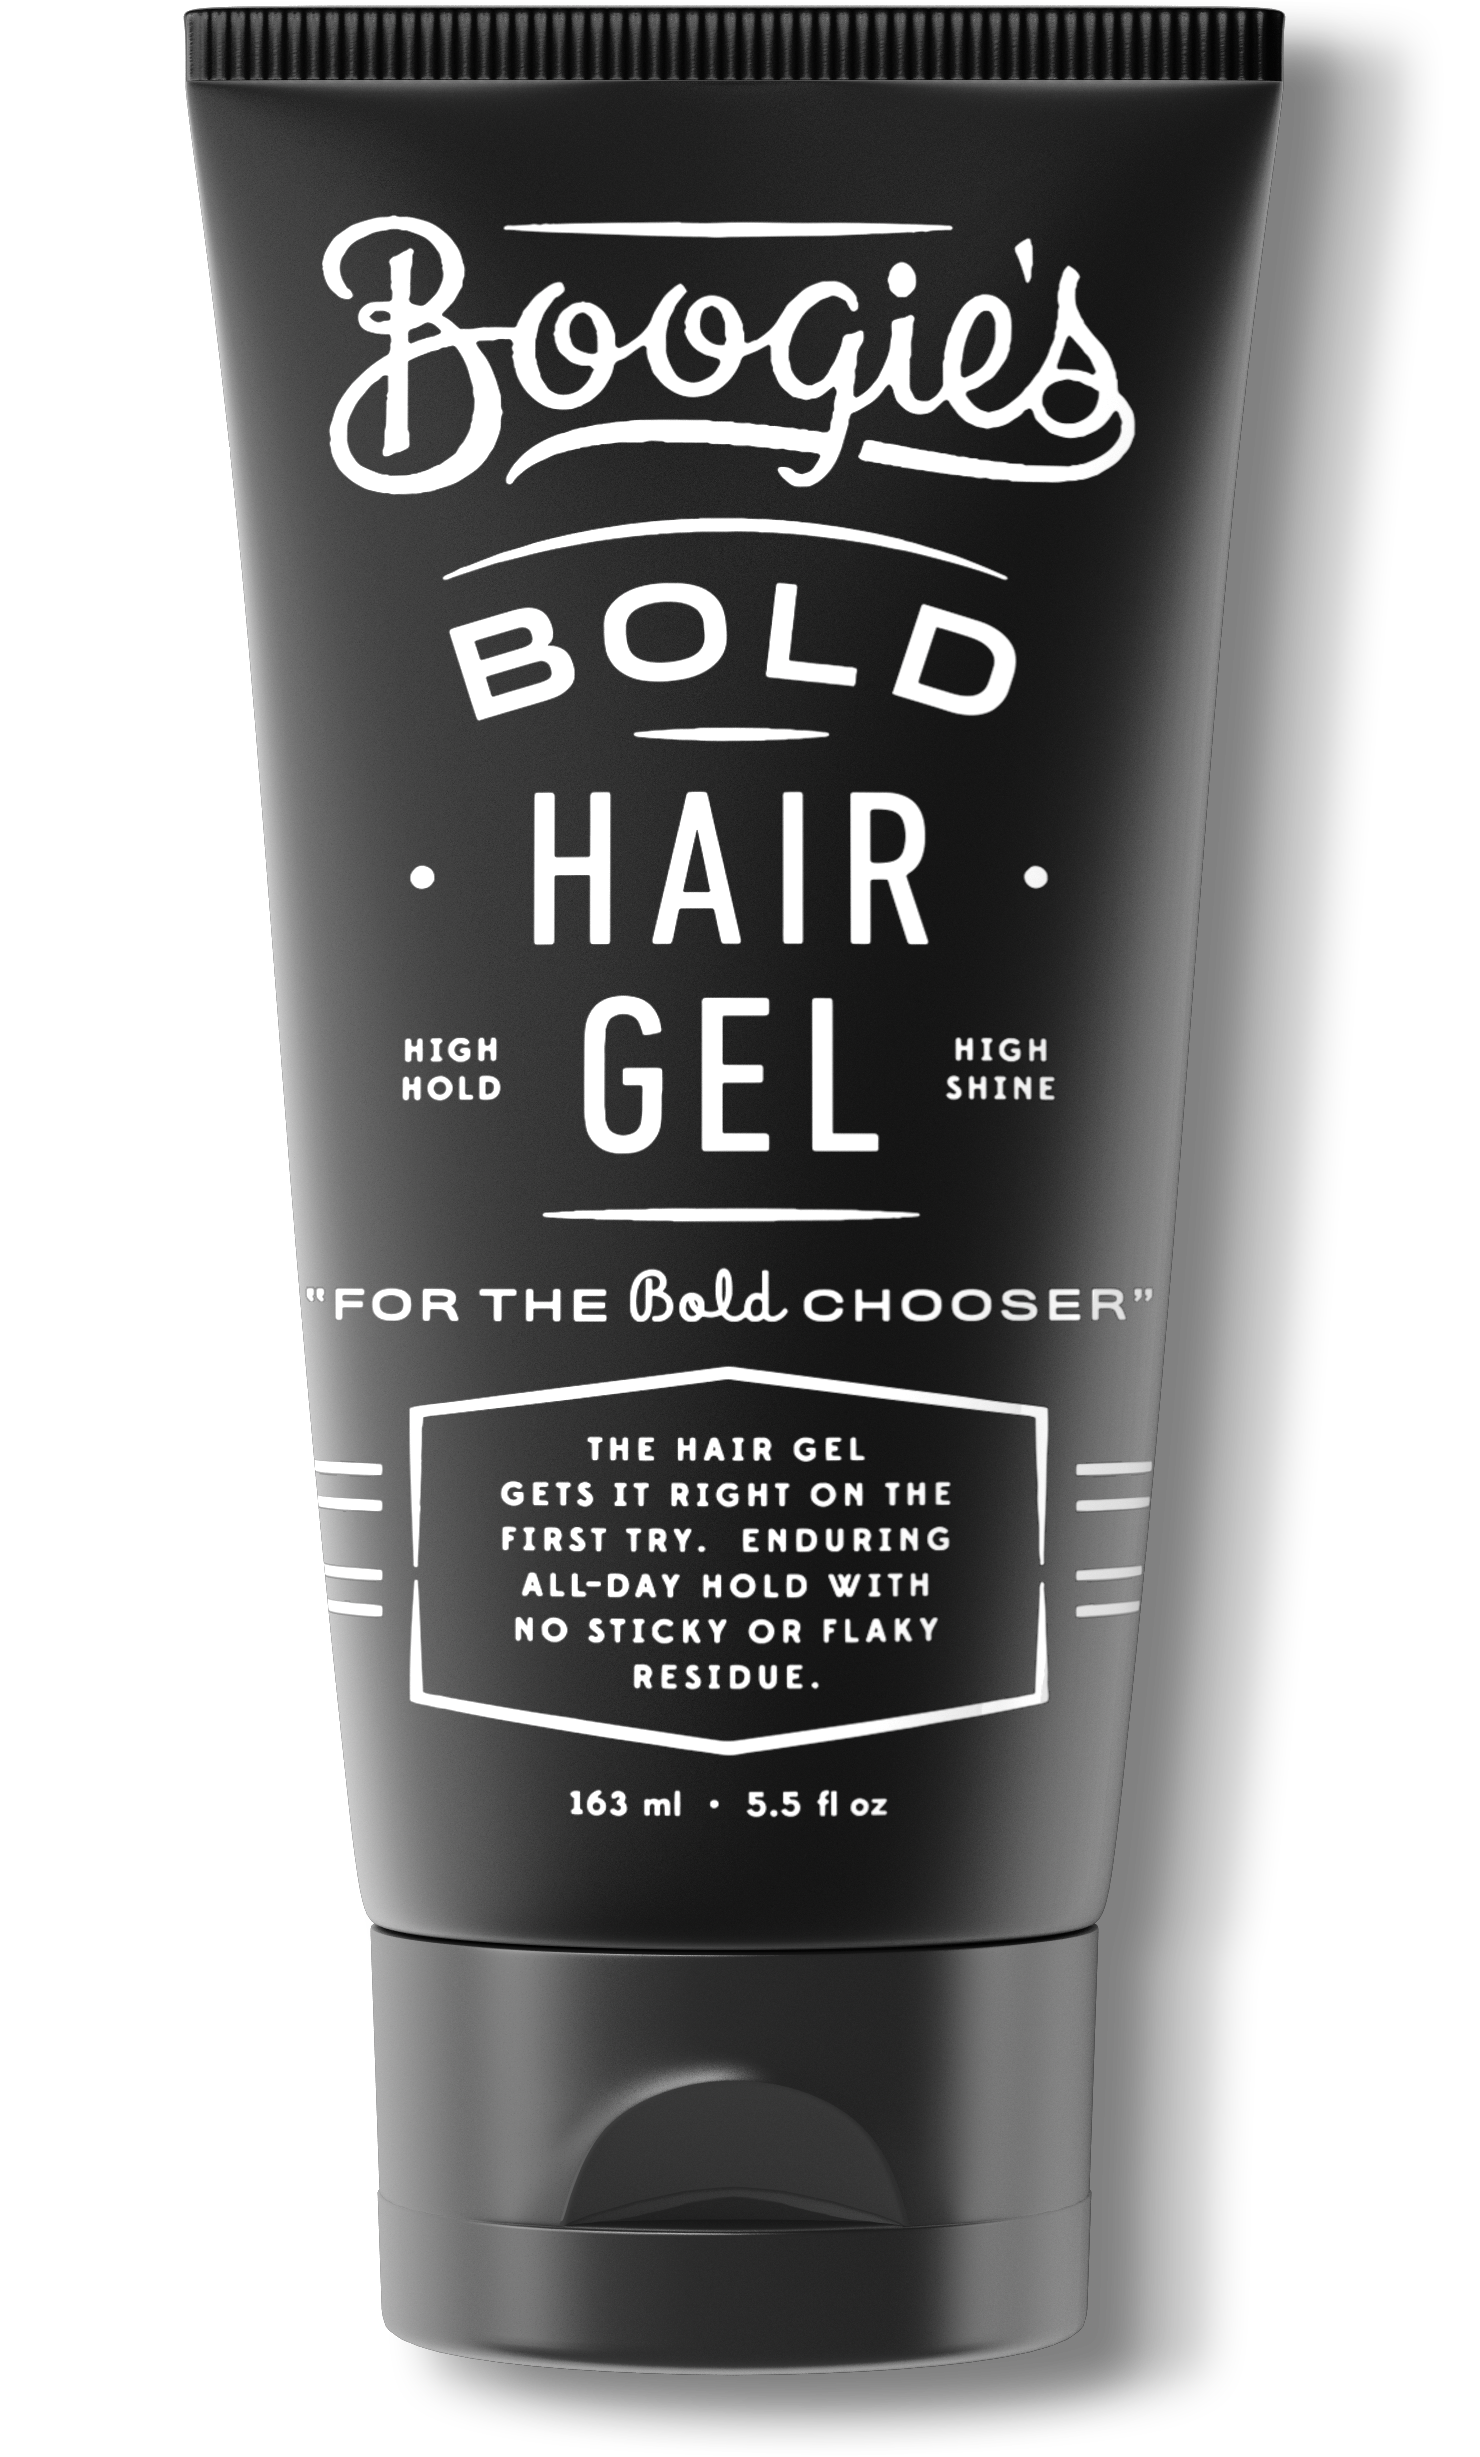 Hair Gel Free PNG Image